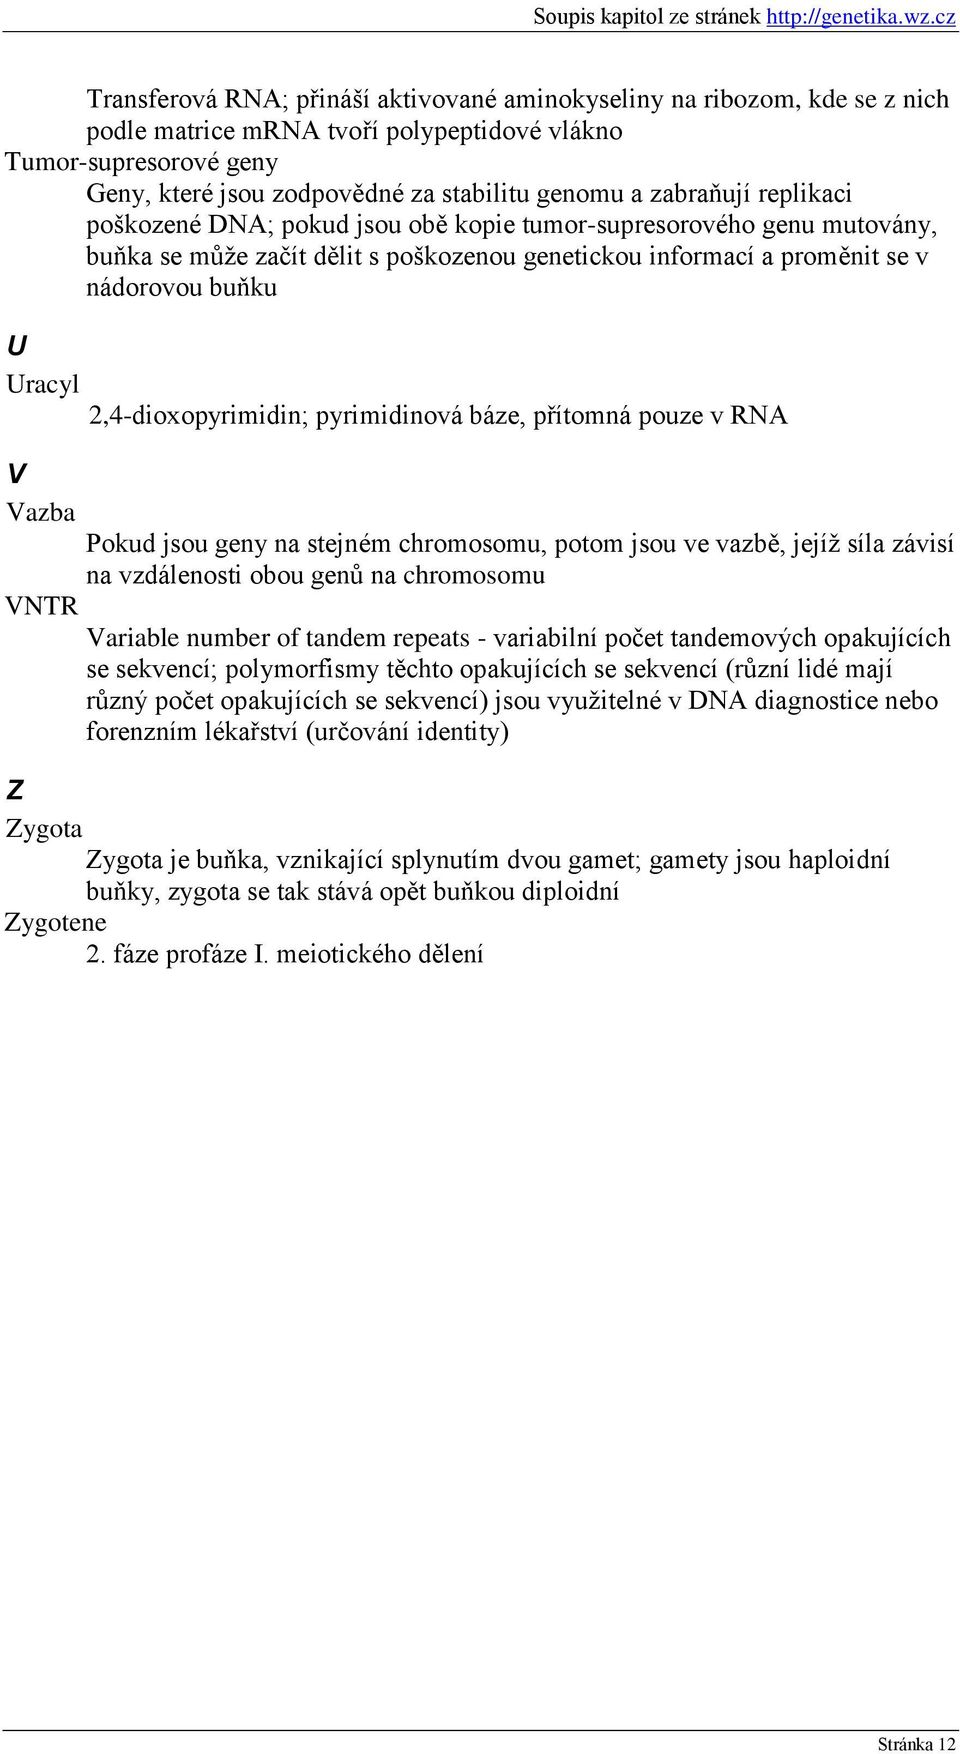 2,4-dioxopyrimidin; pyrimidinová báze, přítomná pouze v RNA V Vazba Pokud jsou geny na stejném chromosomu, potom jsou ve vazbě, jejíţ síla závisí na vzdálenosti obou genů na chromosomu VNTR Variable